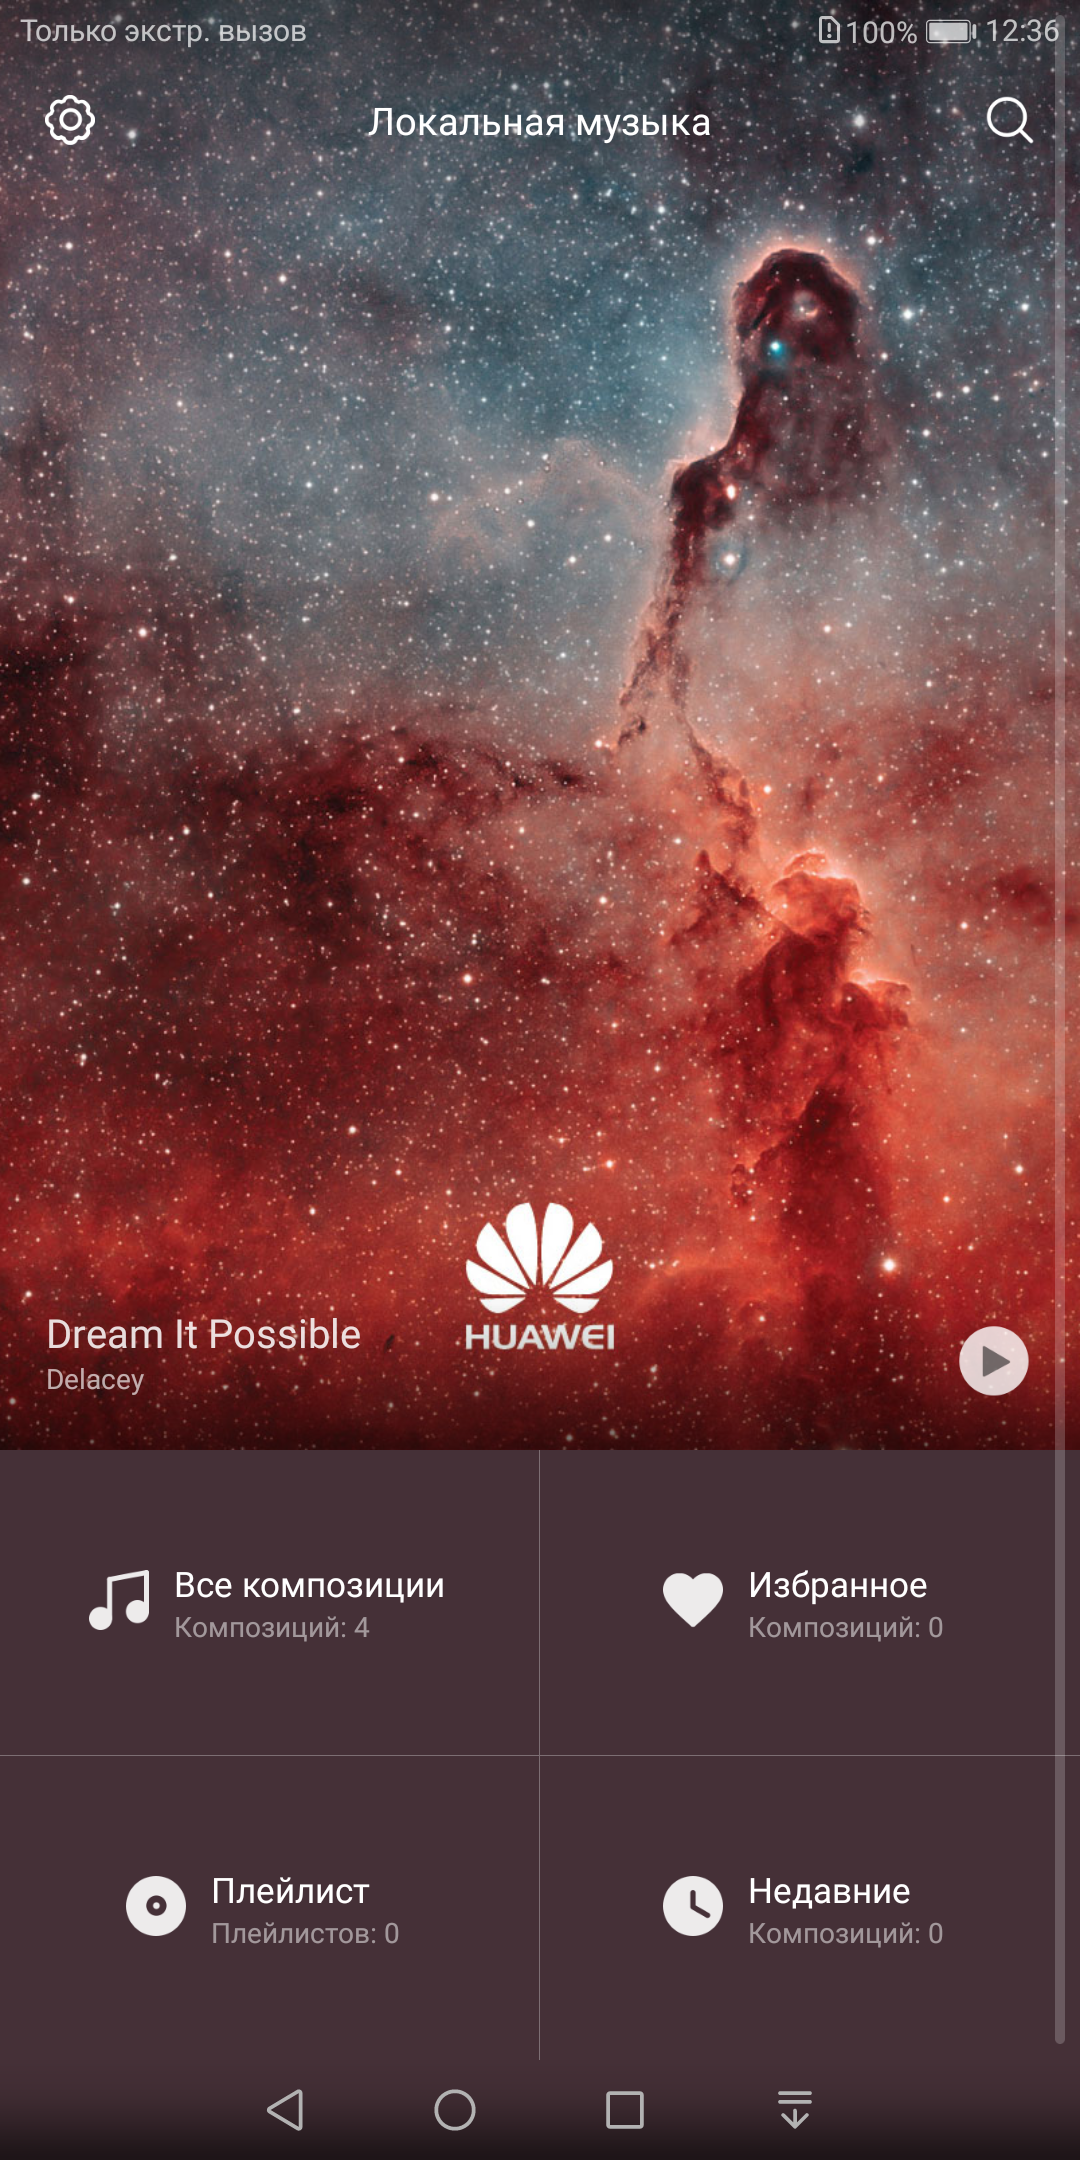 Обзор Huawei Mate 10 Lite: четырёхглазый смартфон с модным дисплеем-153